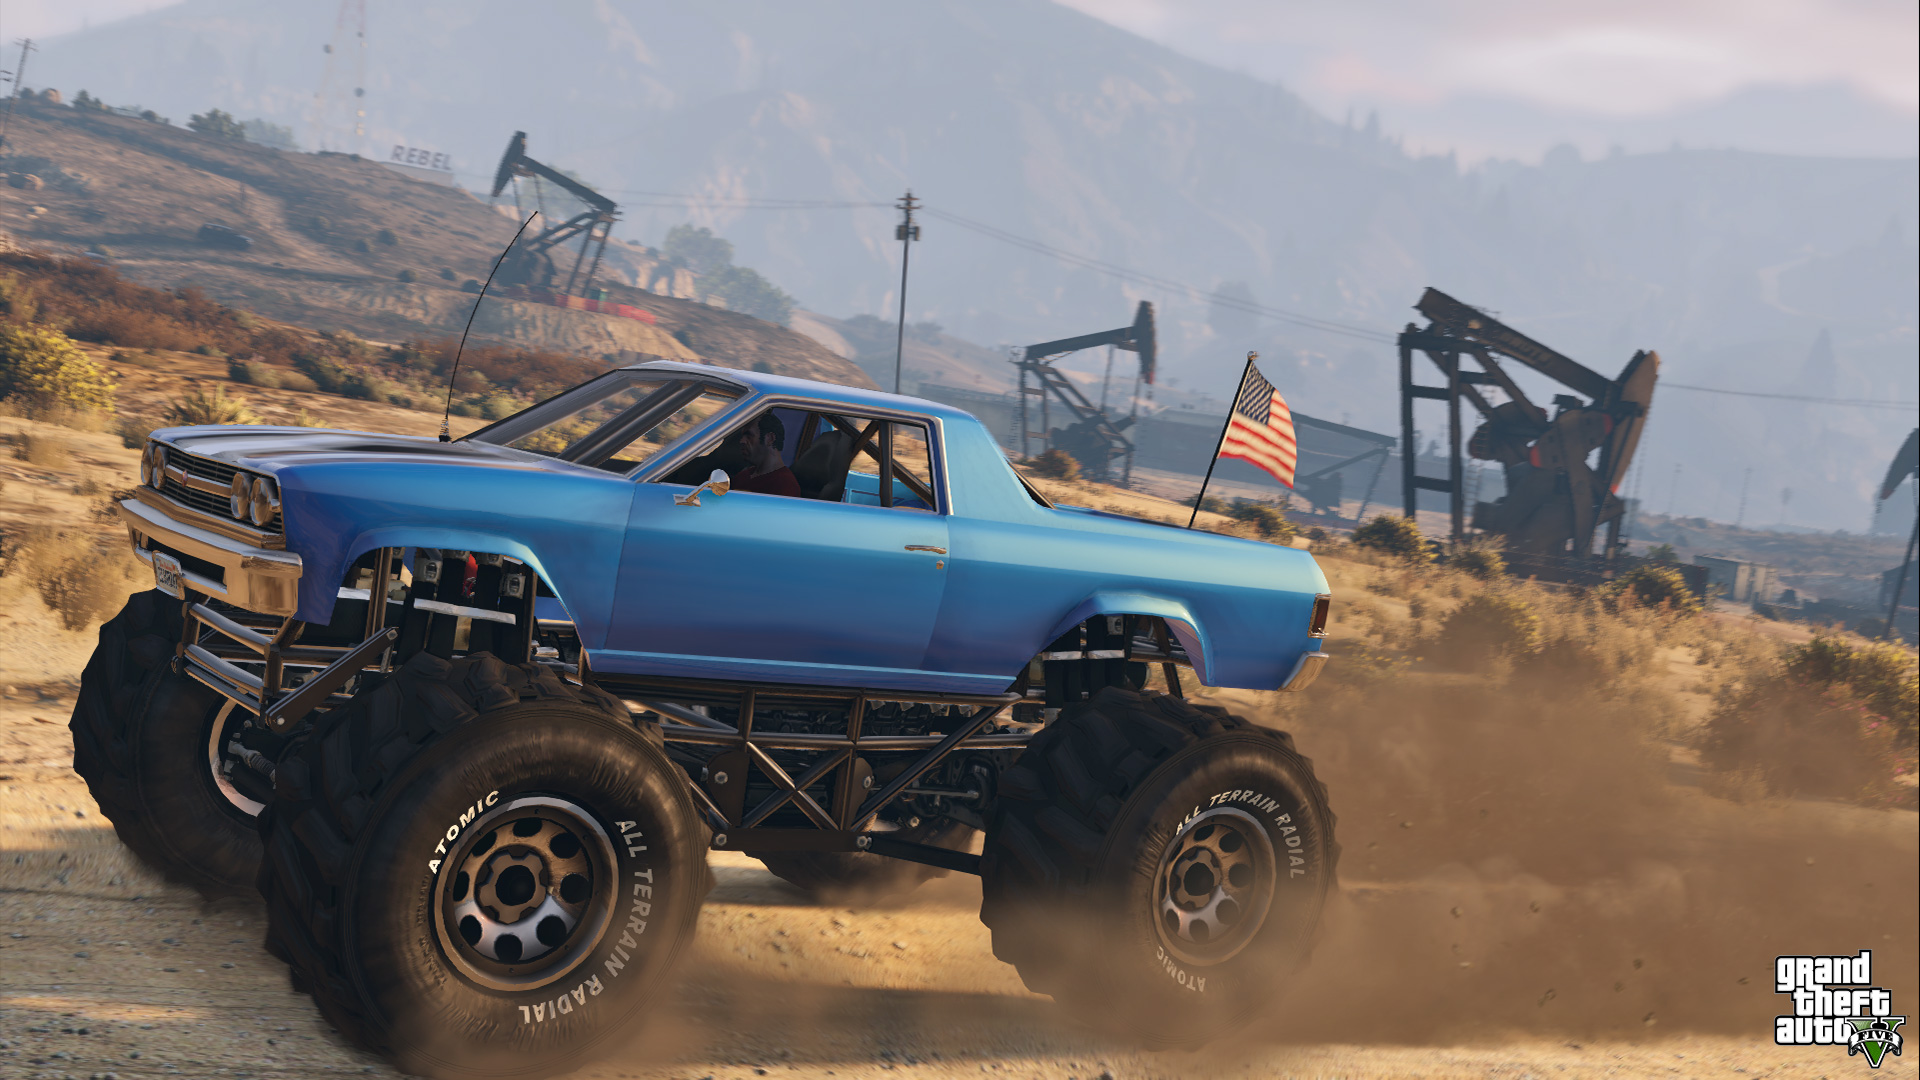 Immagine pubblicata in relazione al seguente contenuto: Rockstar pubblica nuove info e screenshots di Grand Theft Auto V | Nome immagine: news21805_Grand-Theft-Auto-V_8.jpg